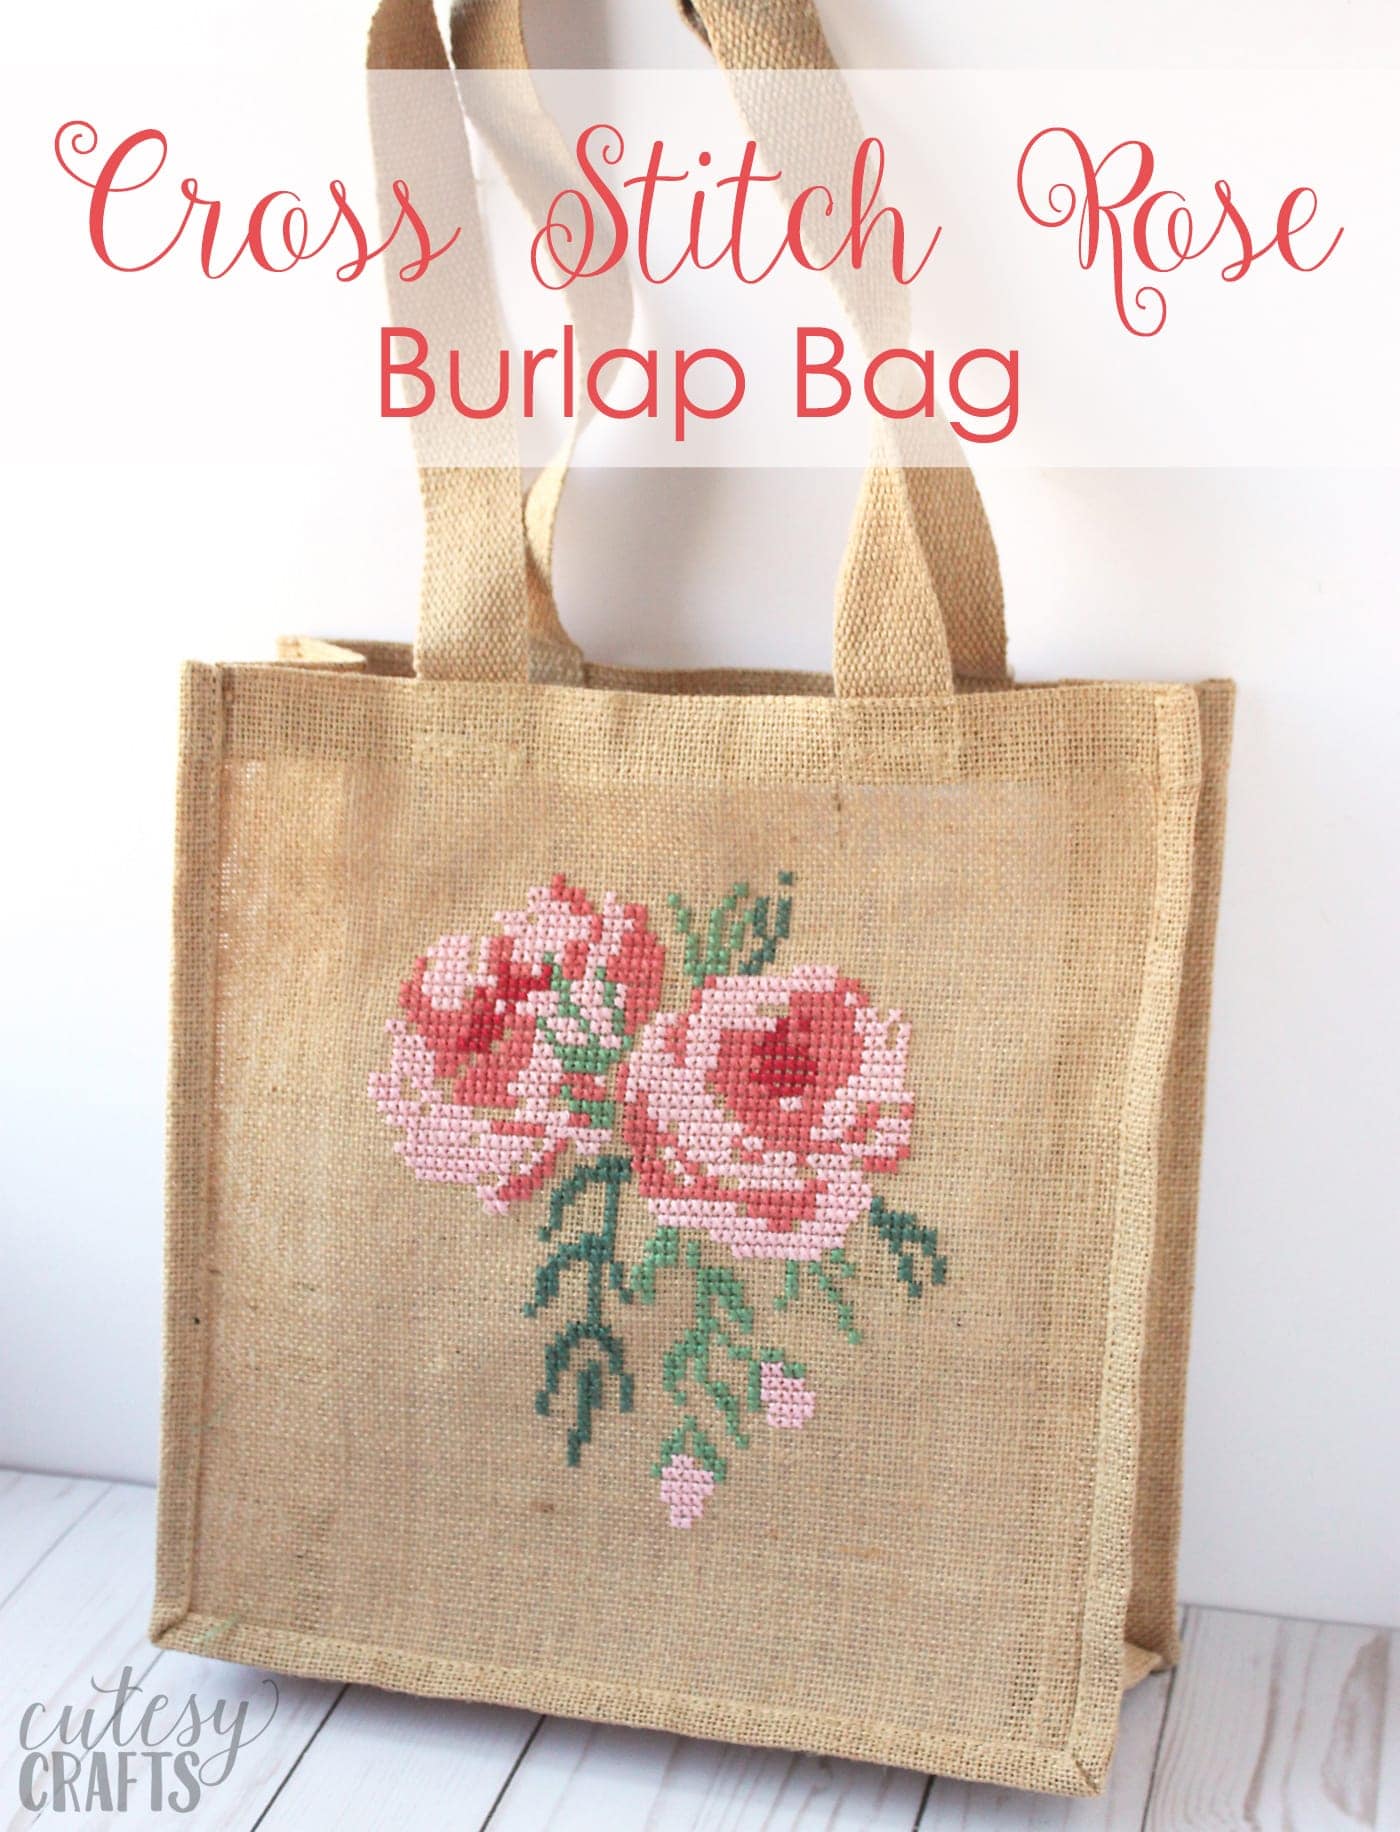 Rose Cross Stitch Burlap Bag Tutorial 